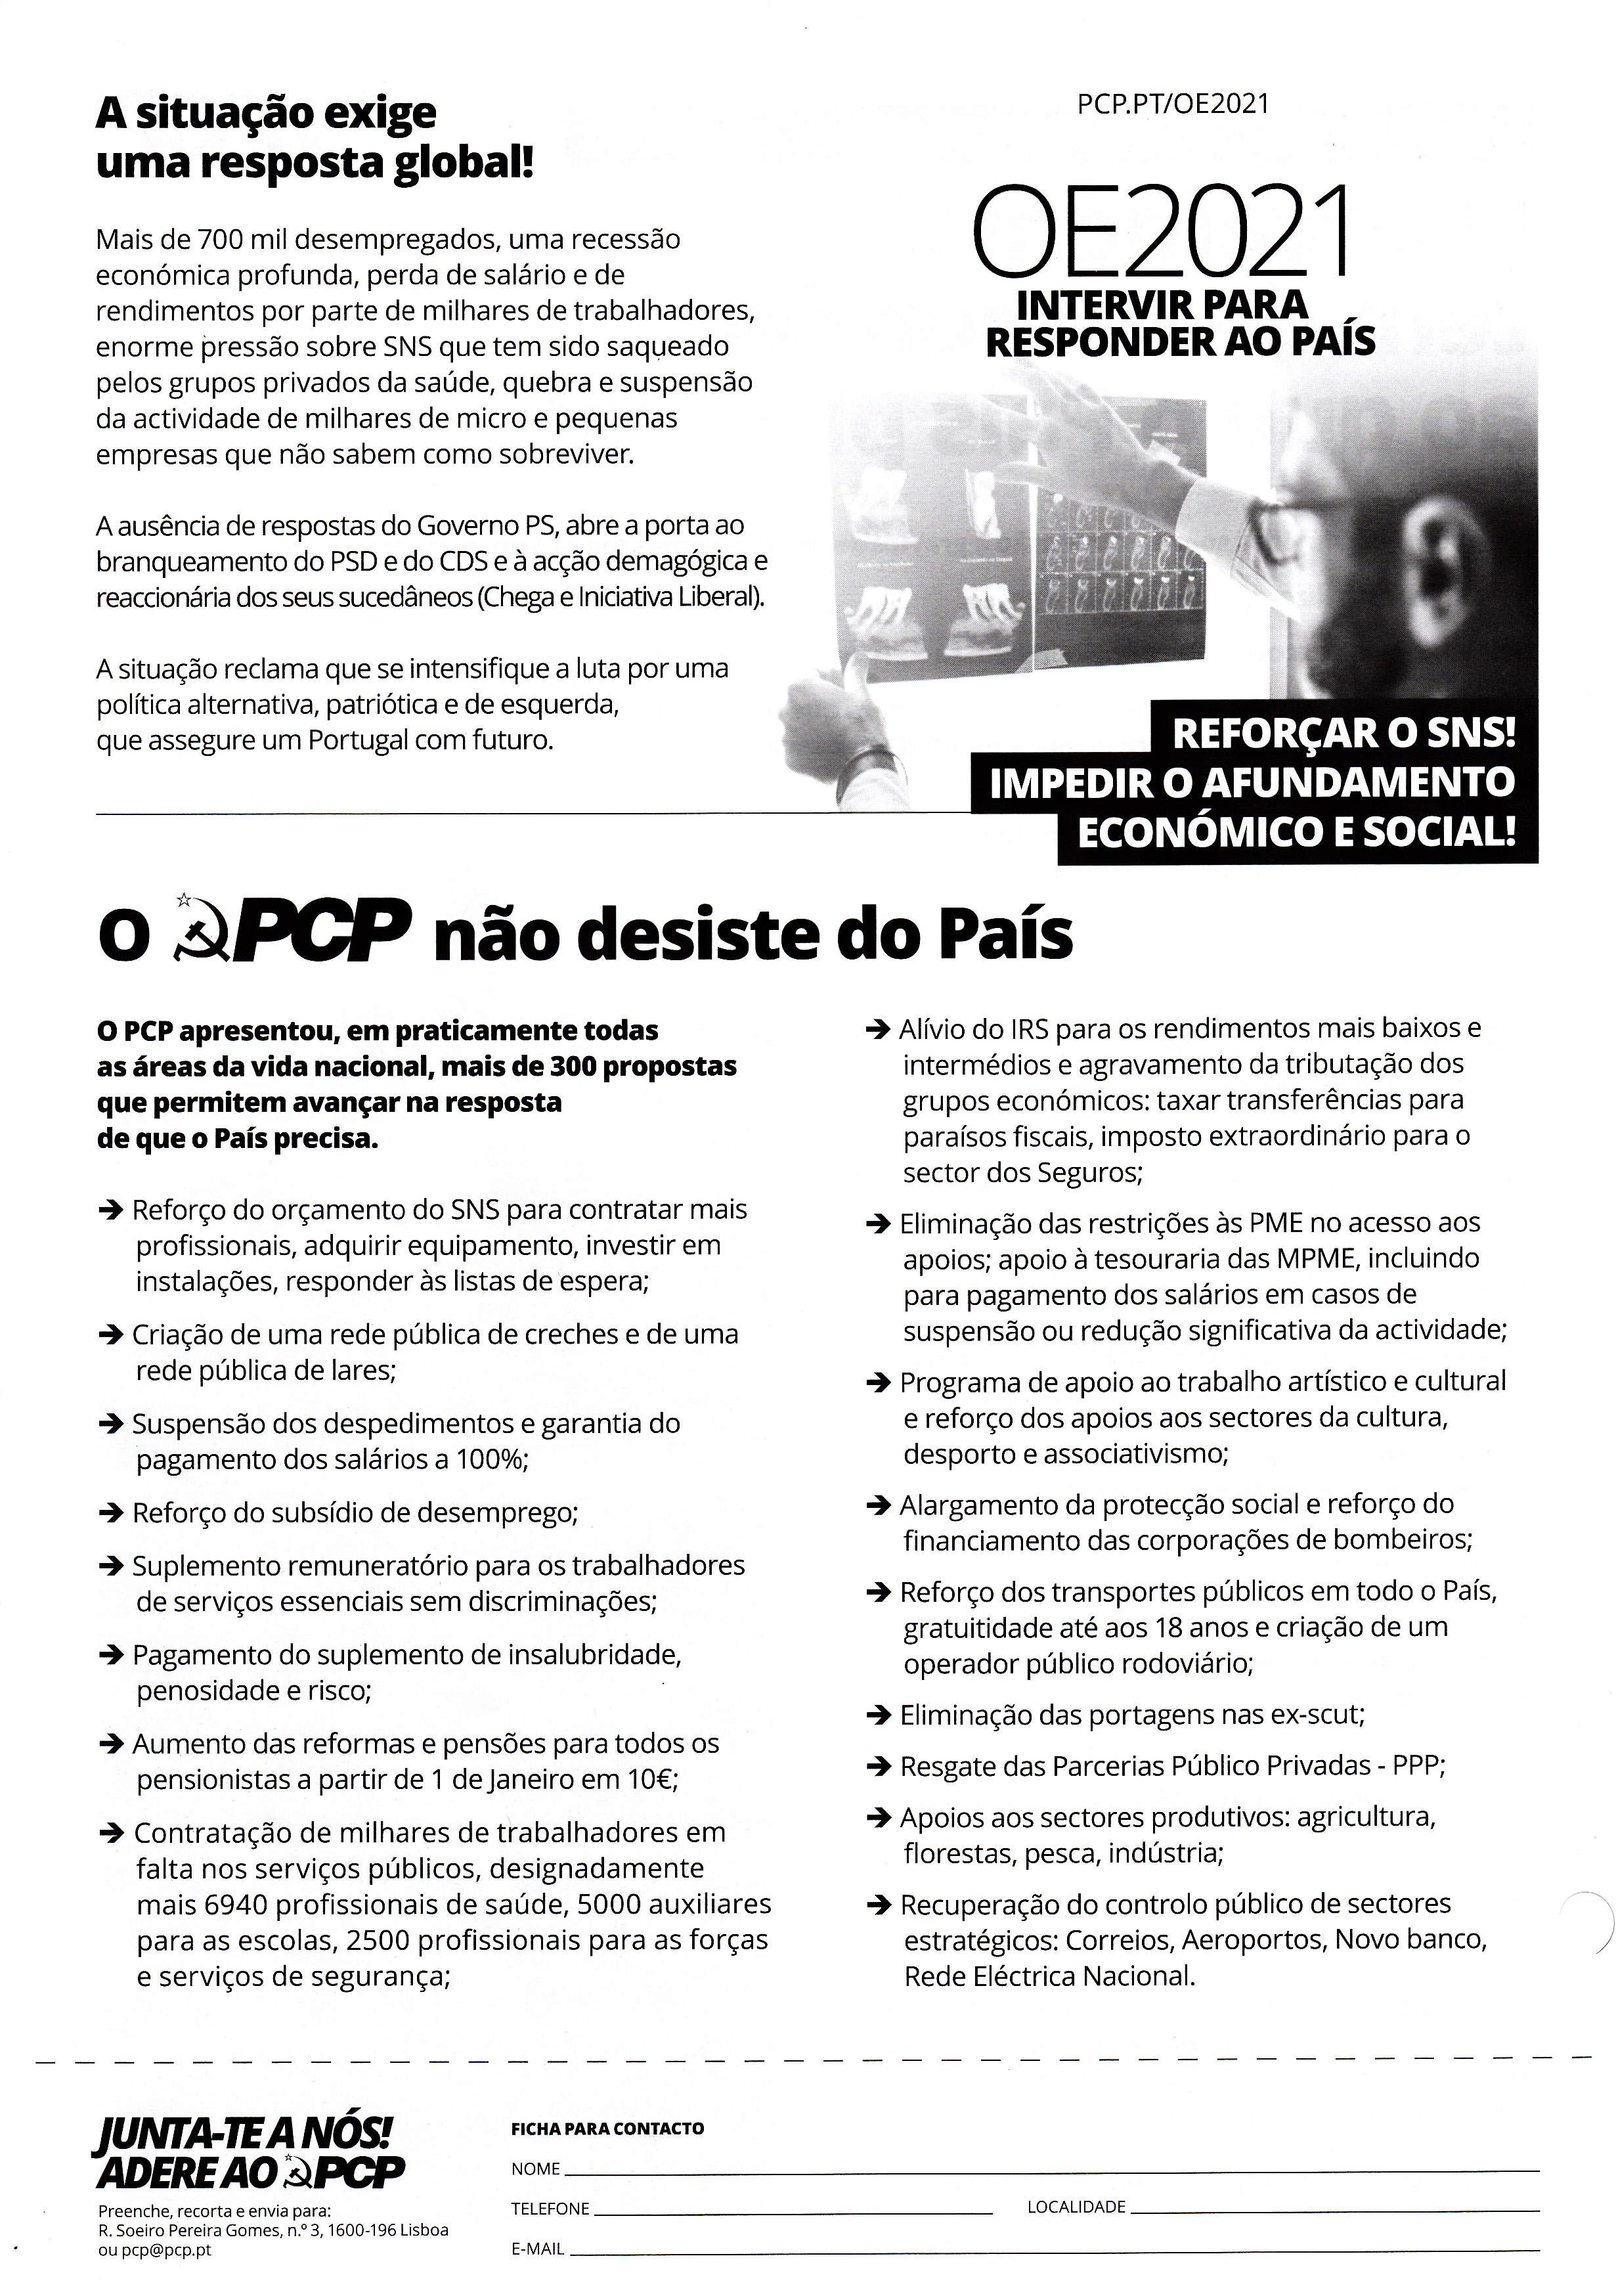 PCP_2020_0002